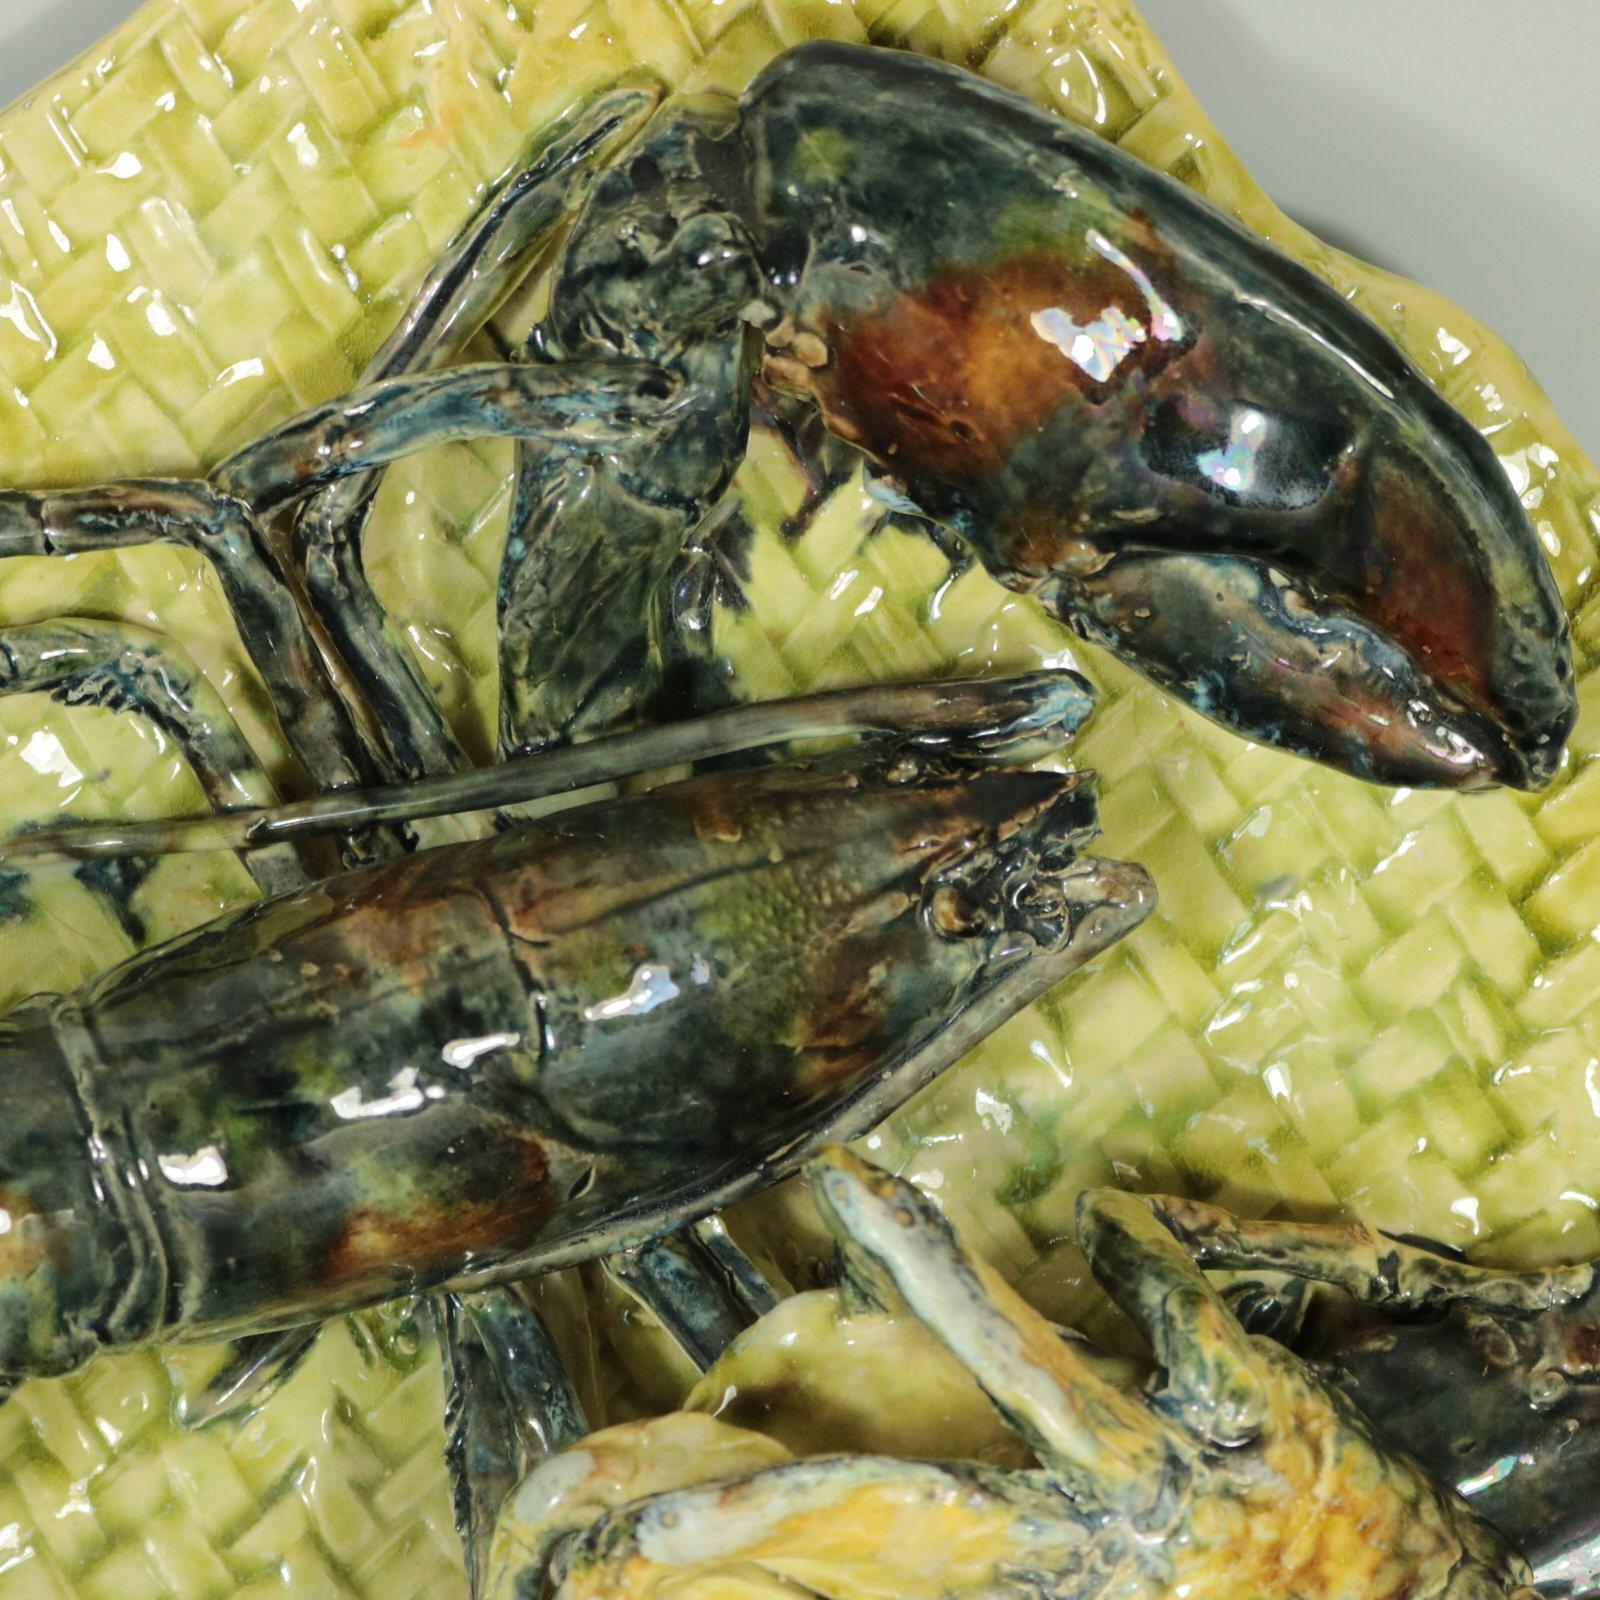 Pochette murale en majolique de Palissy d'Alfred Renoleau, représentant un homard et un crabe sur un fond de vannerie. Coloration : jaune, gris, brun, sont prédominants. La pièce porte les marques du fabricant de la poterie Alfred Renoleau.